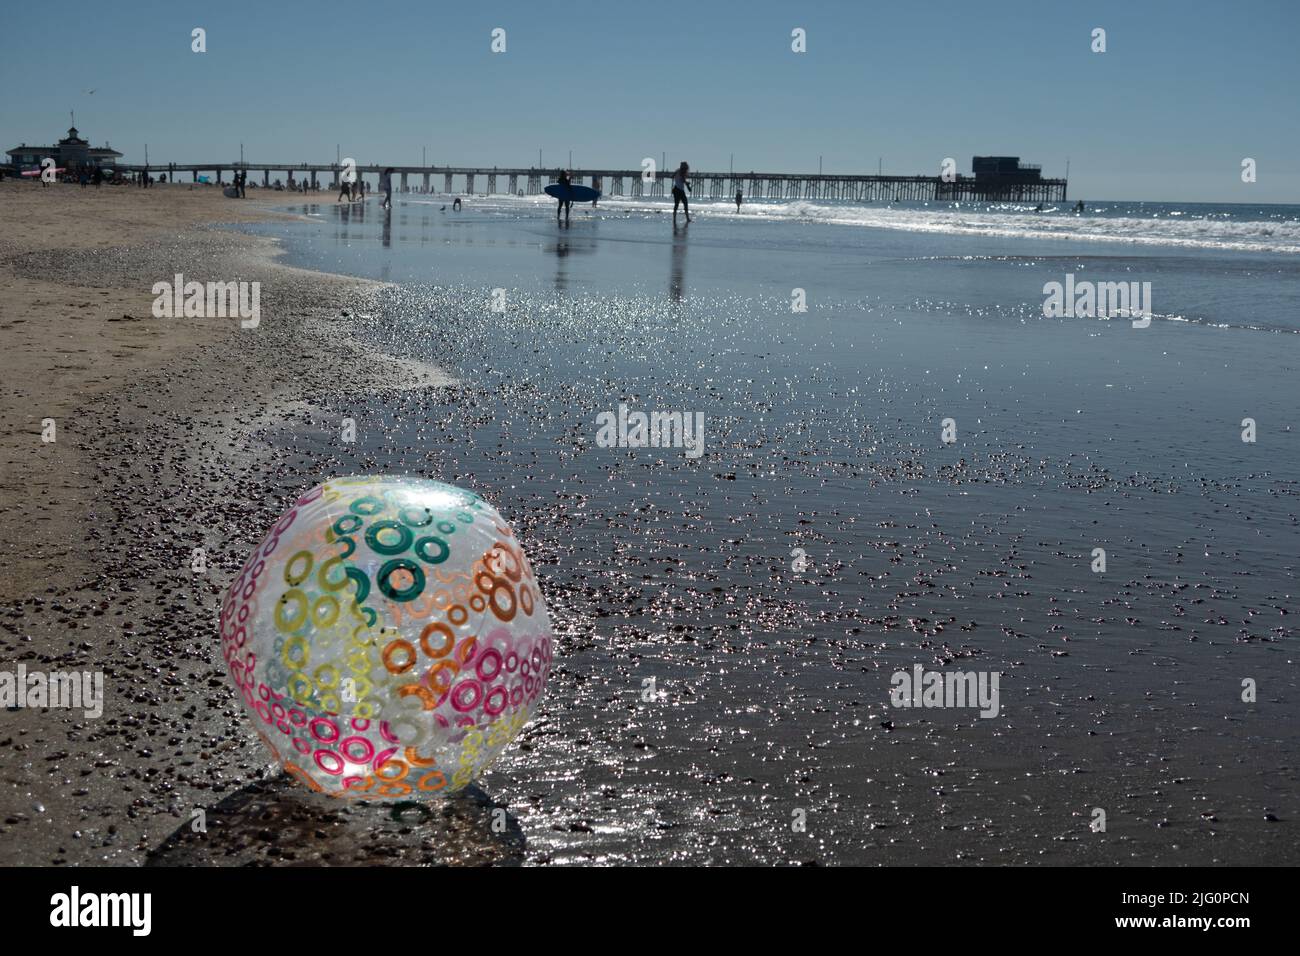 Grand ballon gonflable sur la plage en premier plan de Newport Beach Pier avec surfeur marchant le long de la plage Banque D'Images